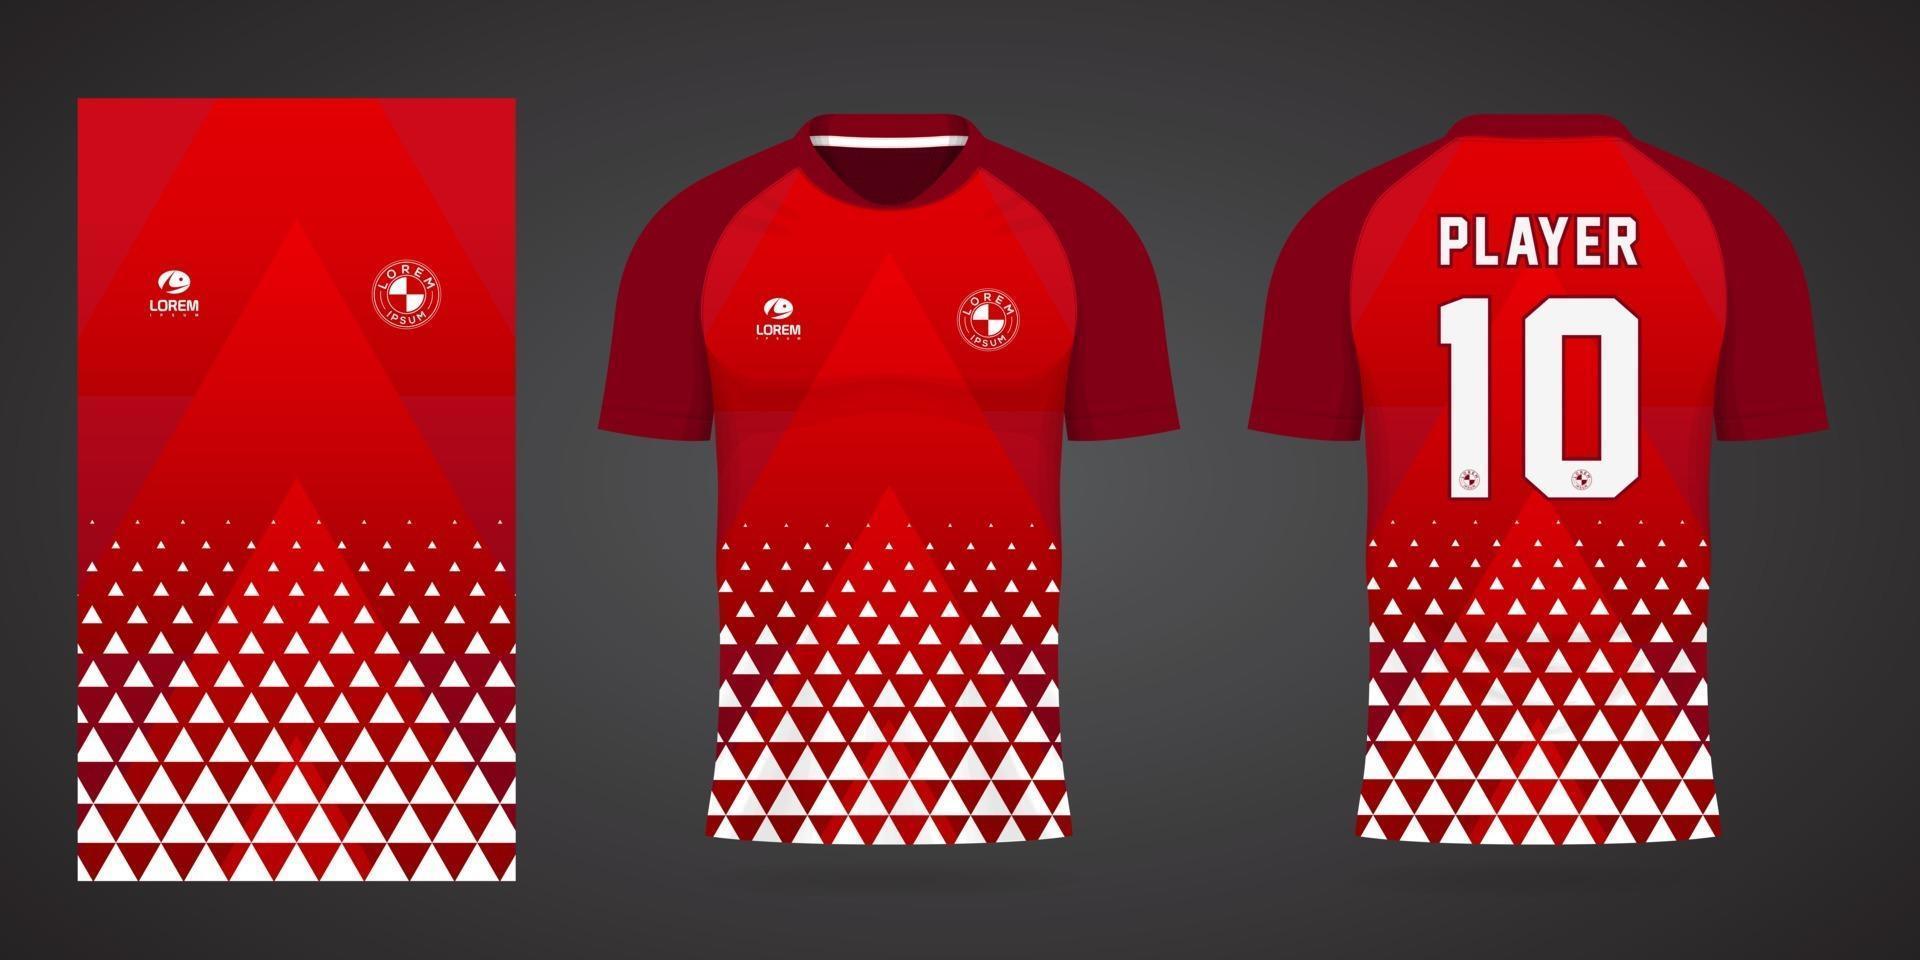 modèle de maillot de sport pour les uniformes d'équipe et la conception de t-shirt de football vecteur